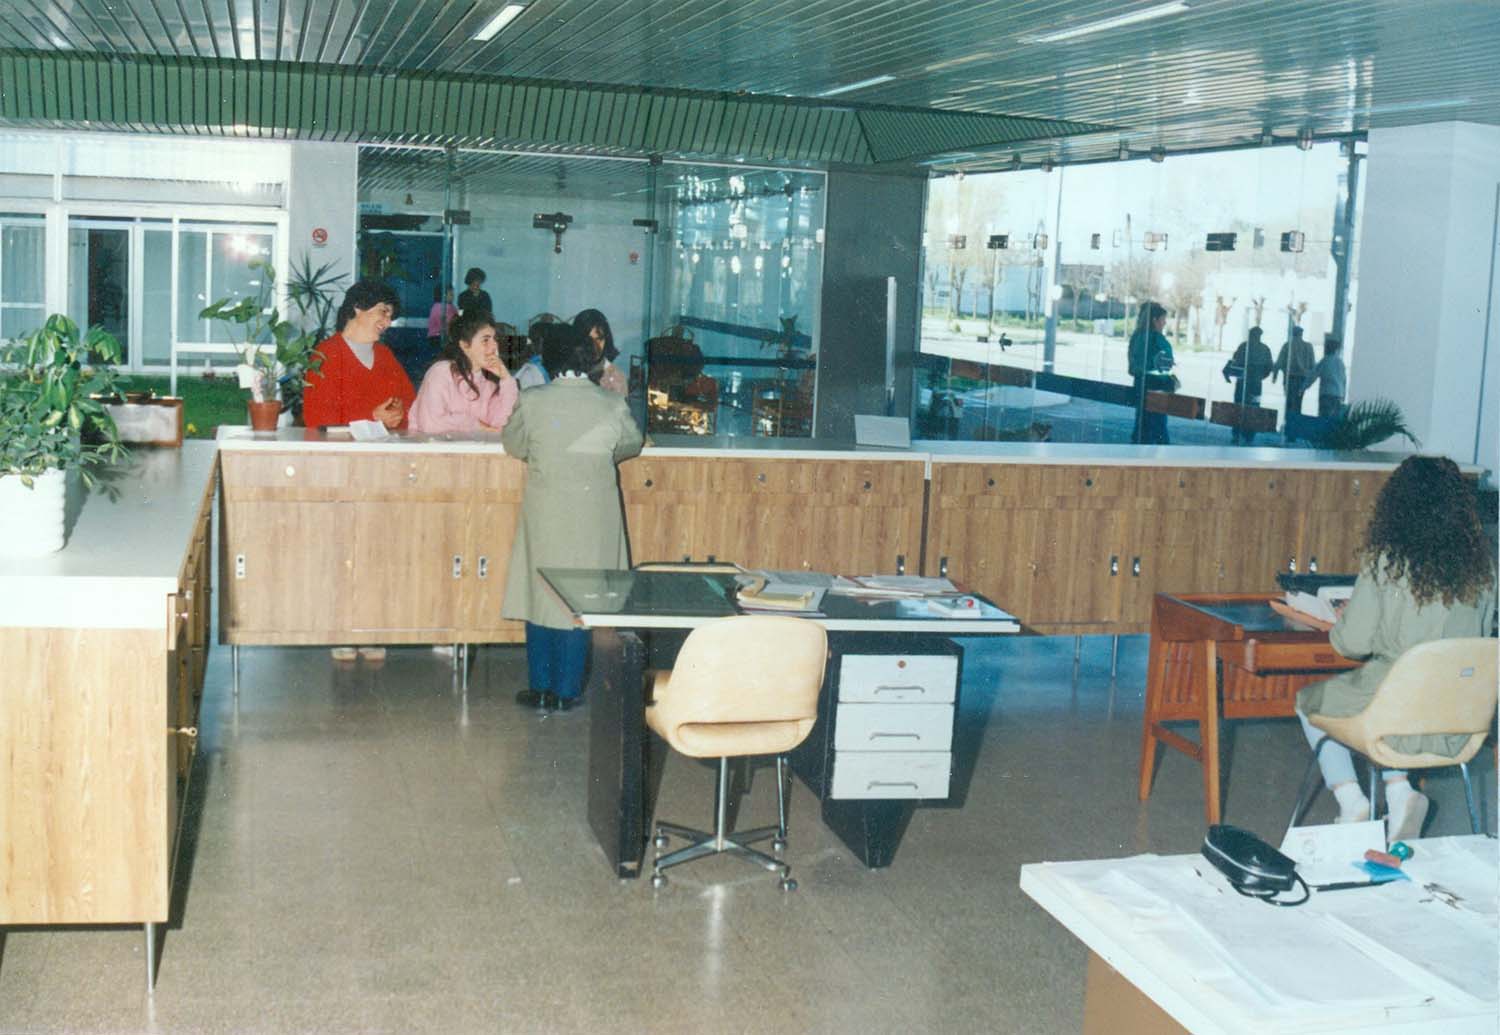 1991 Inauguración Hospital San Martin- Administración Gral